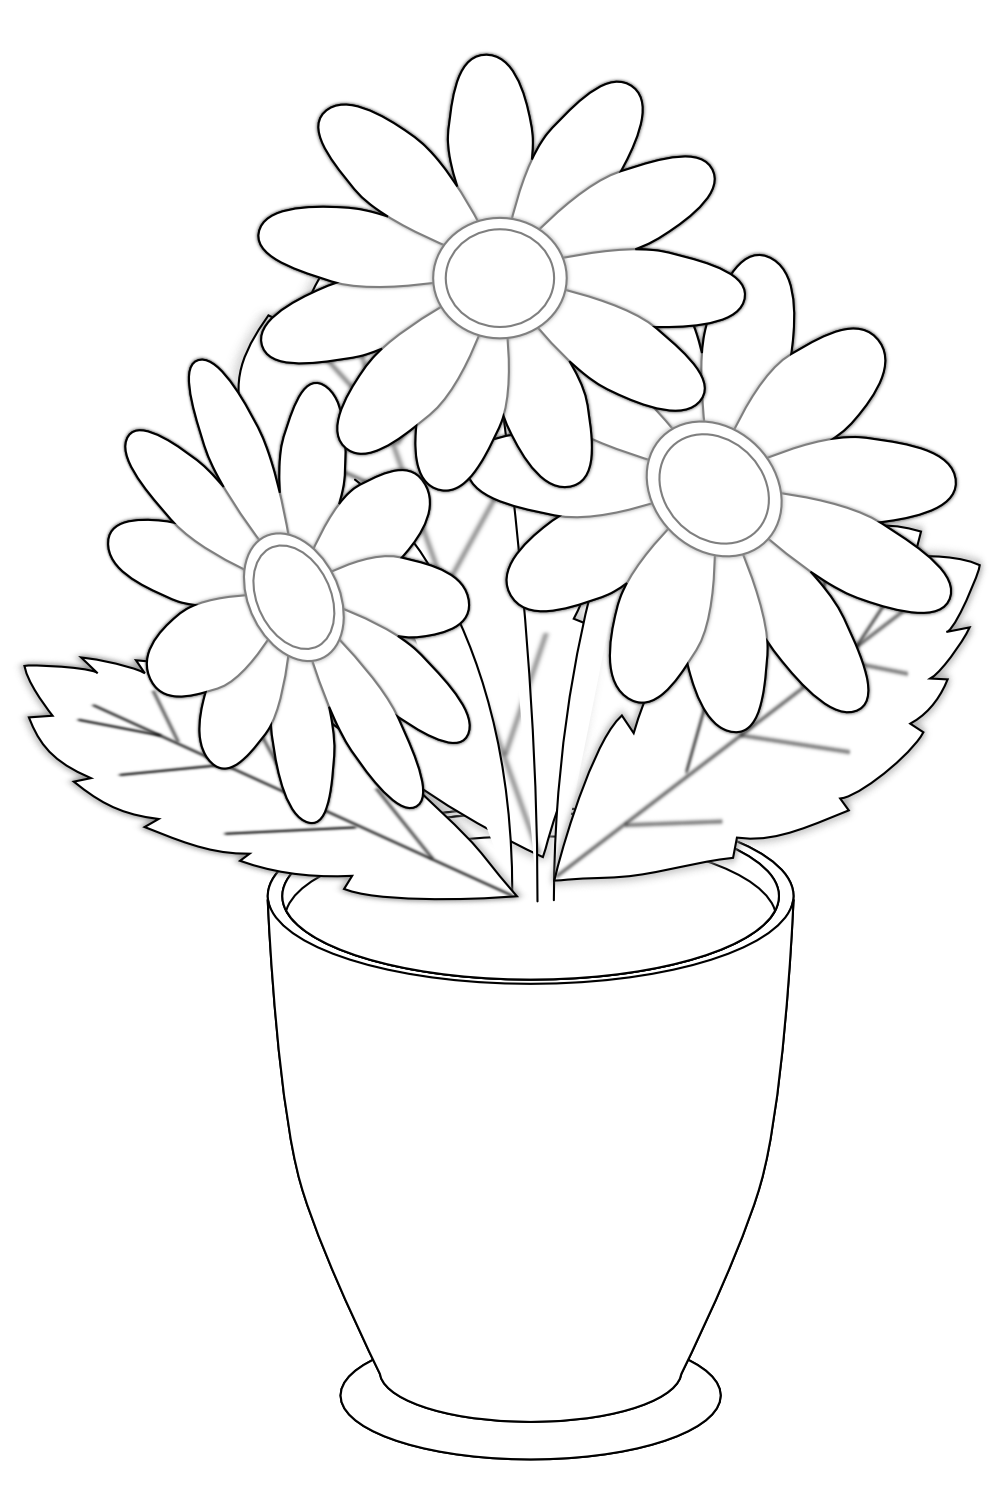 Daisy s Vase Black White Flower Shrub xochi.info SVG xochi 